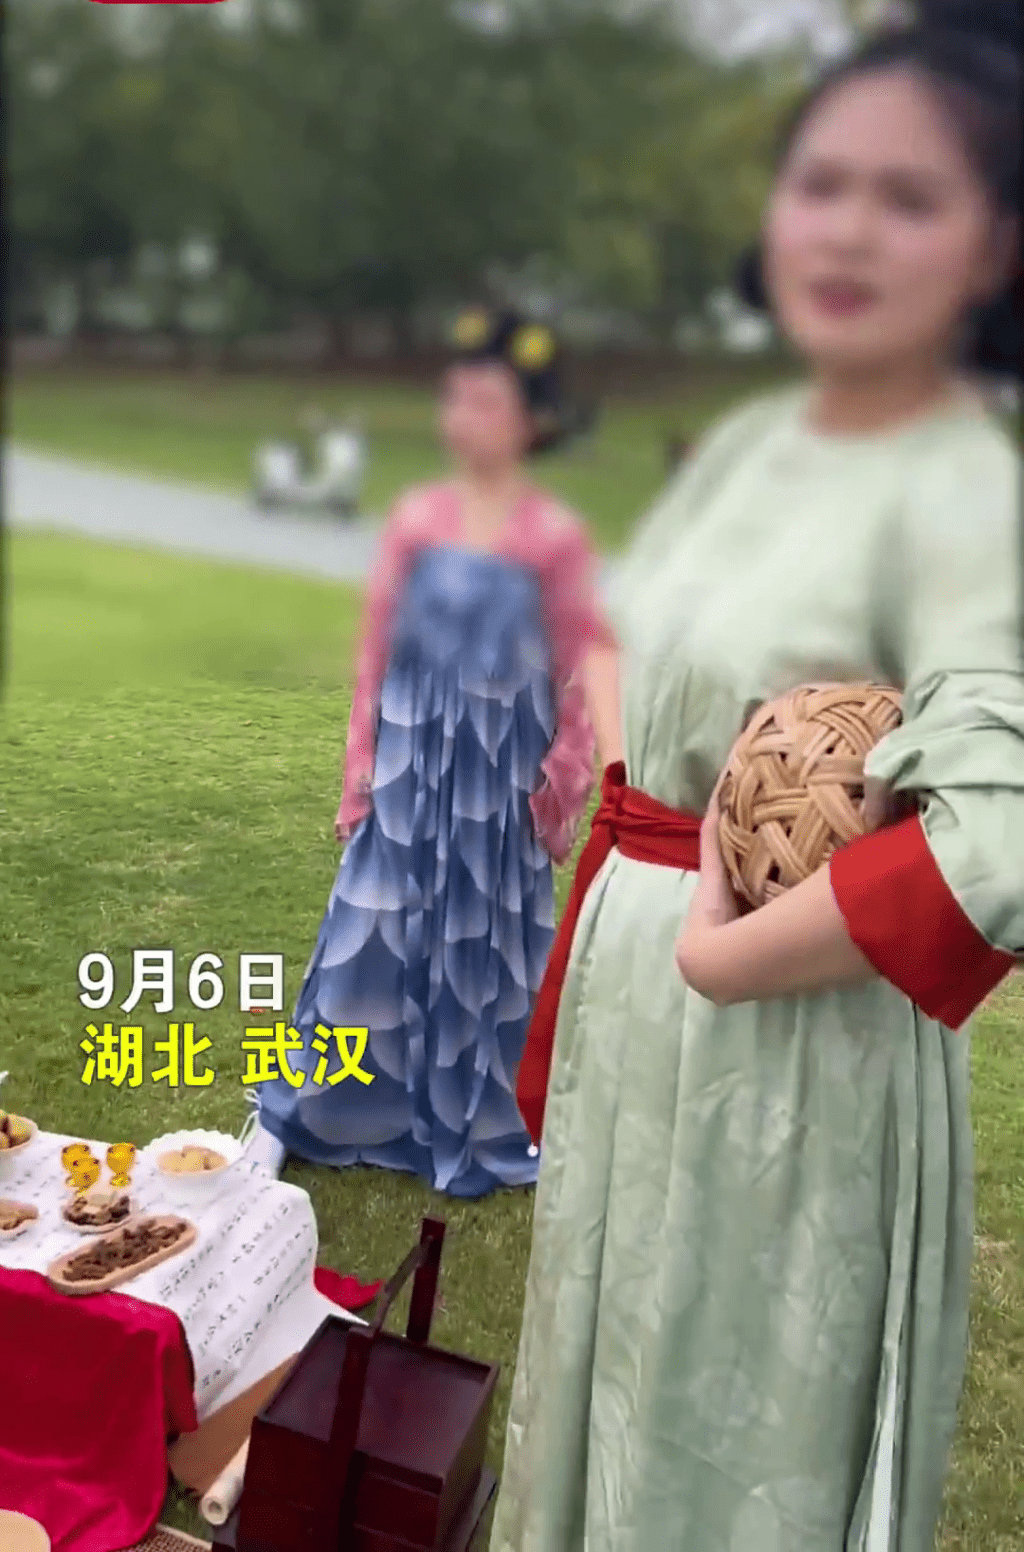 一批旅客穿著漢服到武漢盤龍城考古遺址公園聚會、拍照，期間竟遭到公園工作人員驅趕。時間視頻截圖